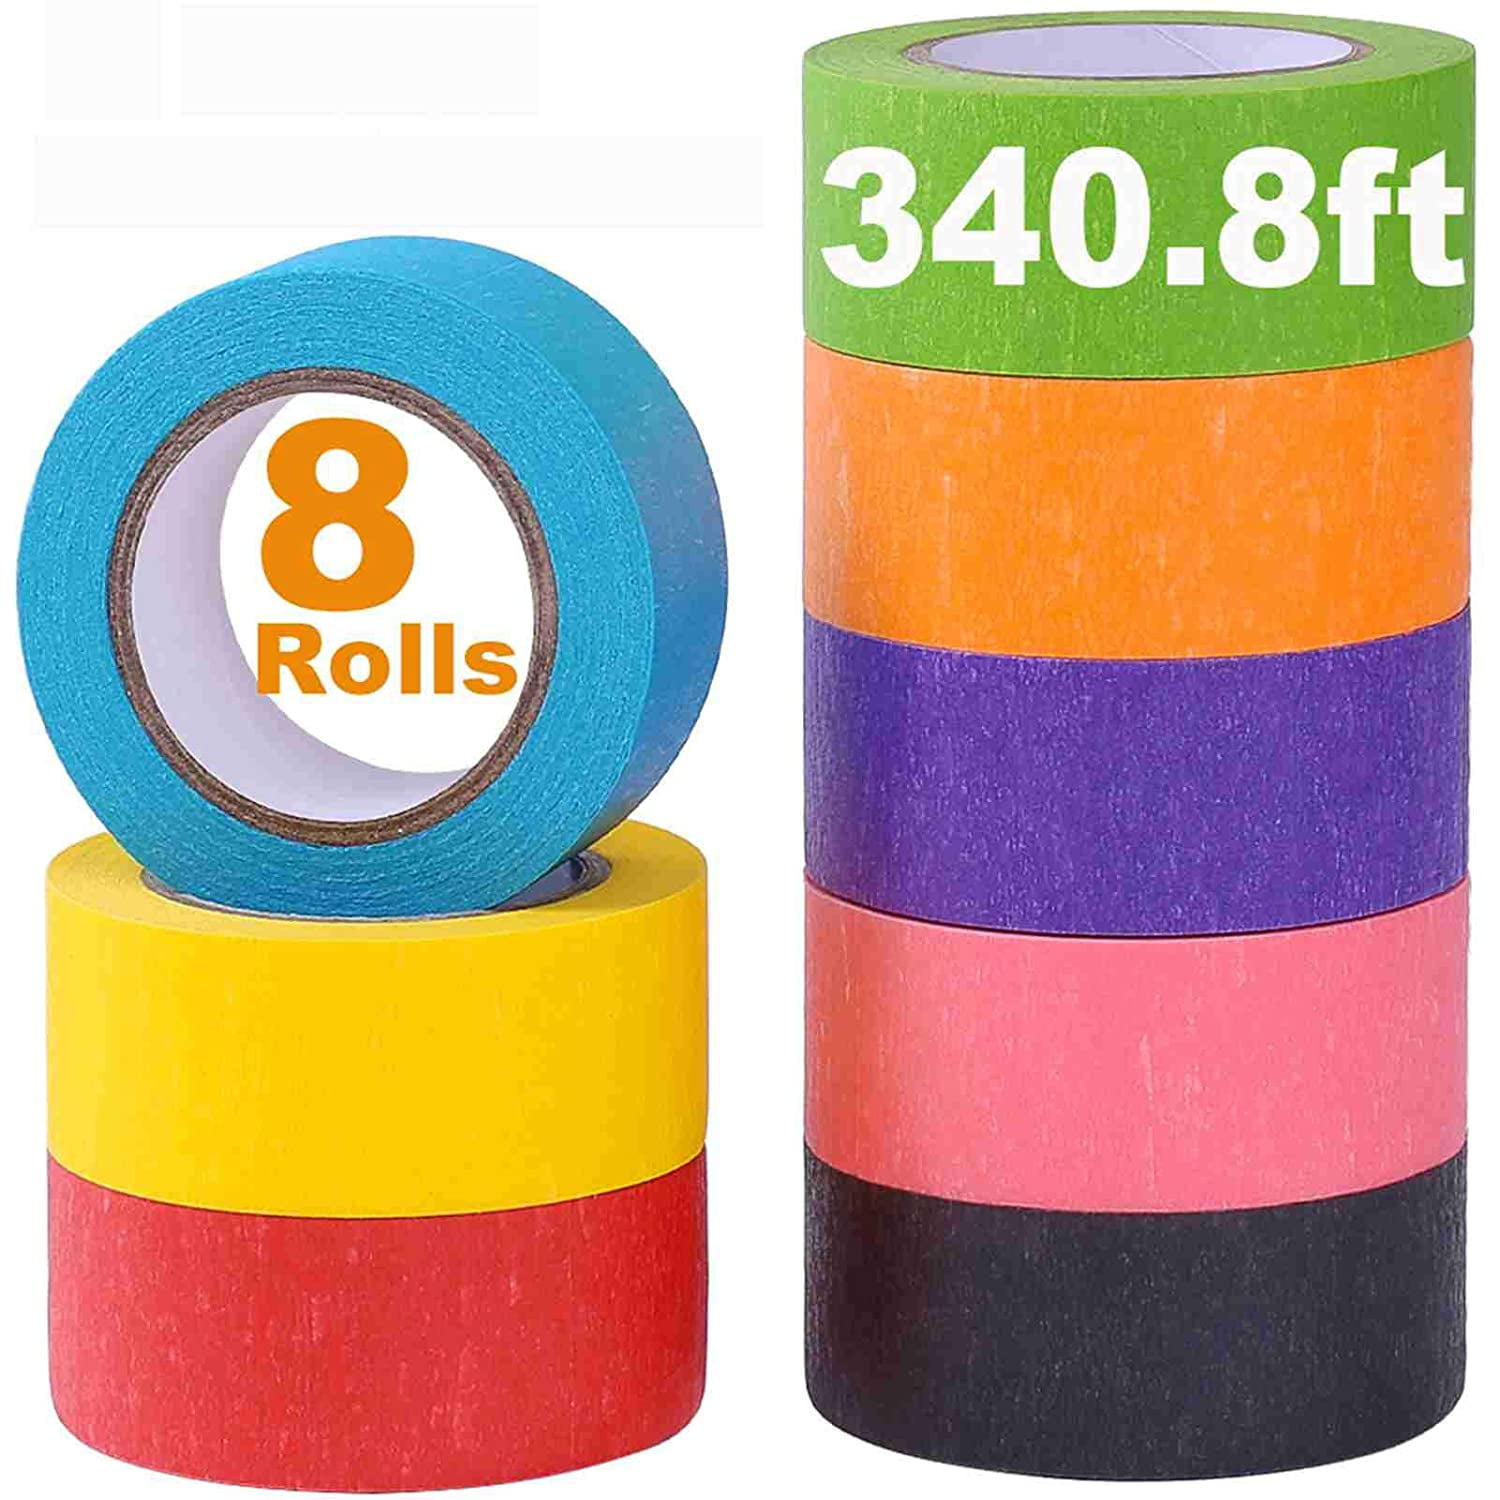 Neon-Tape Set (1 Rolle je Farbe in gelb, grün, pink, orange)-0611-3